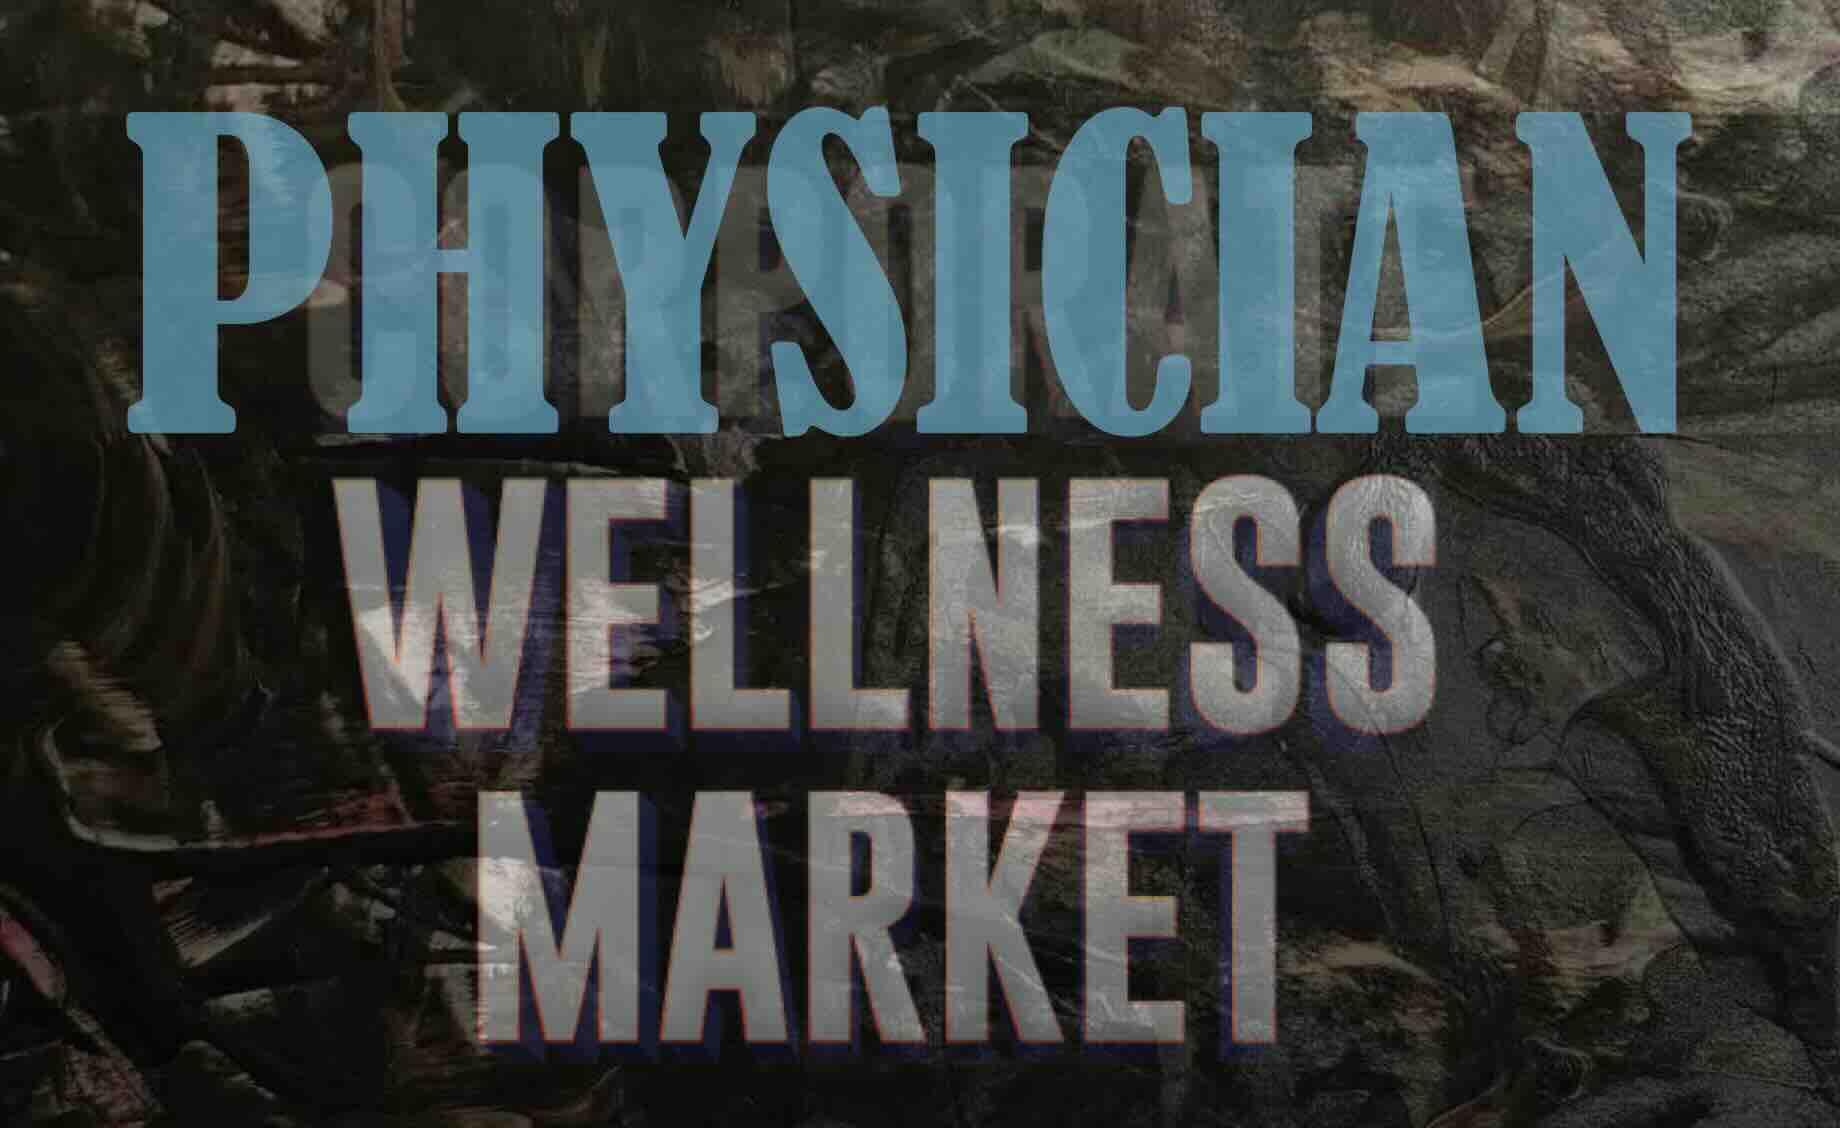 Physician Wellness Market